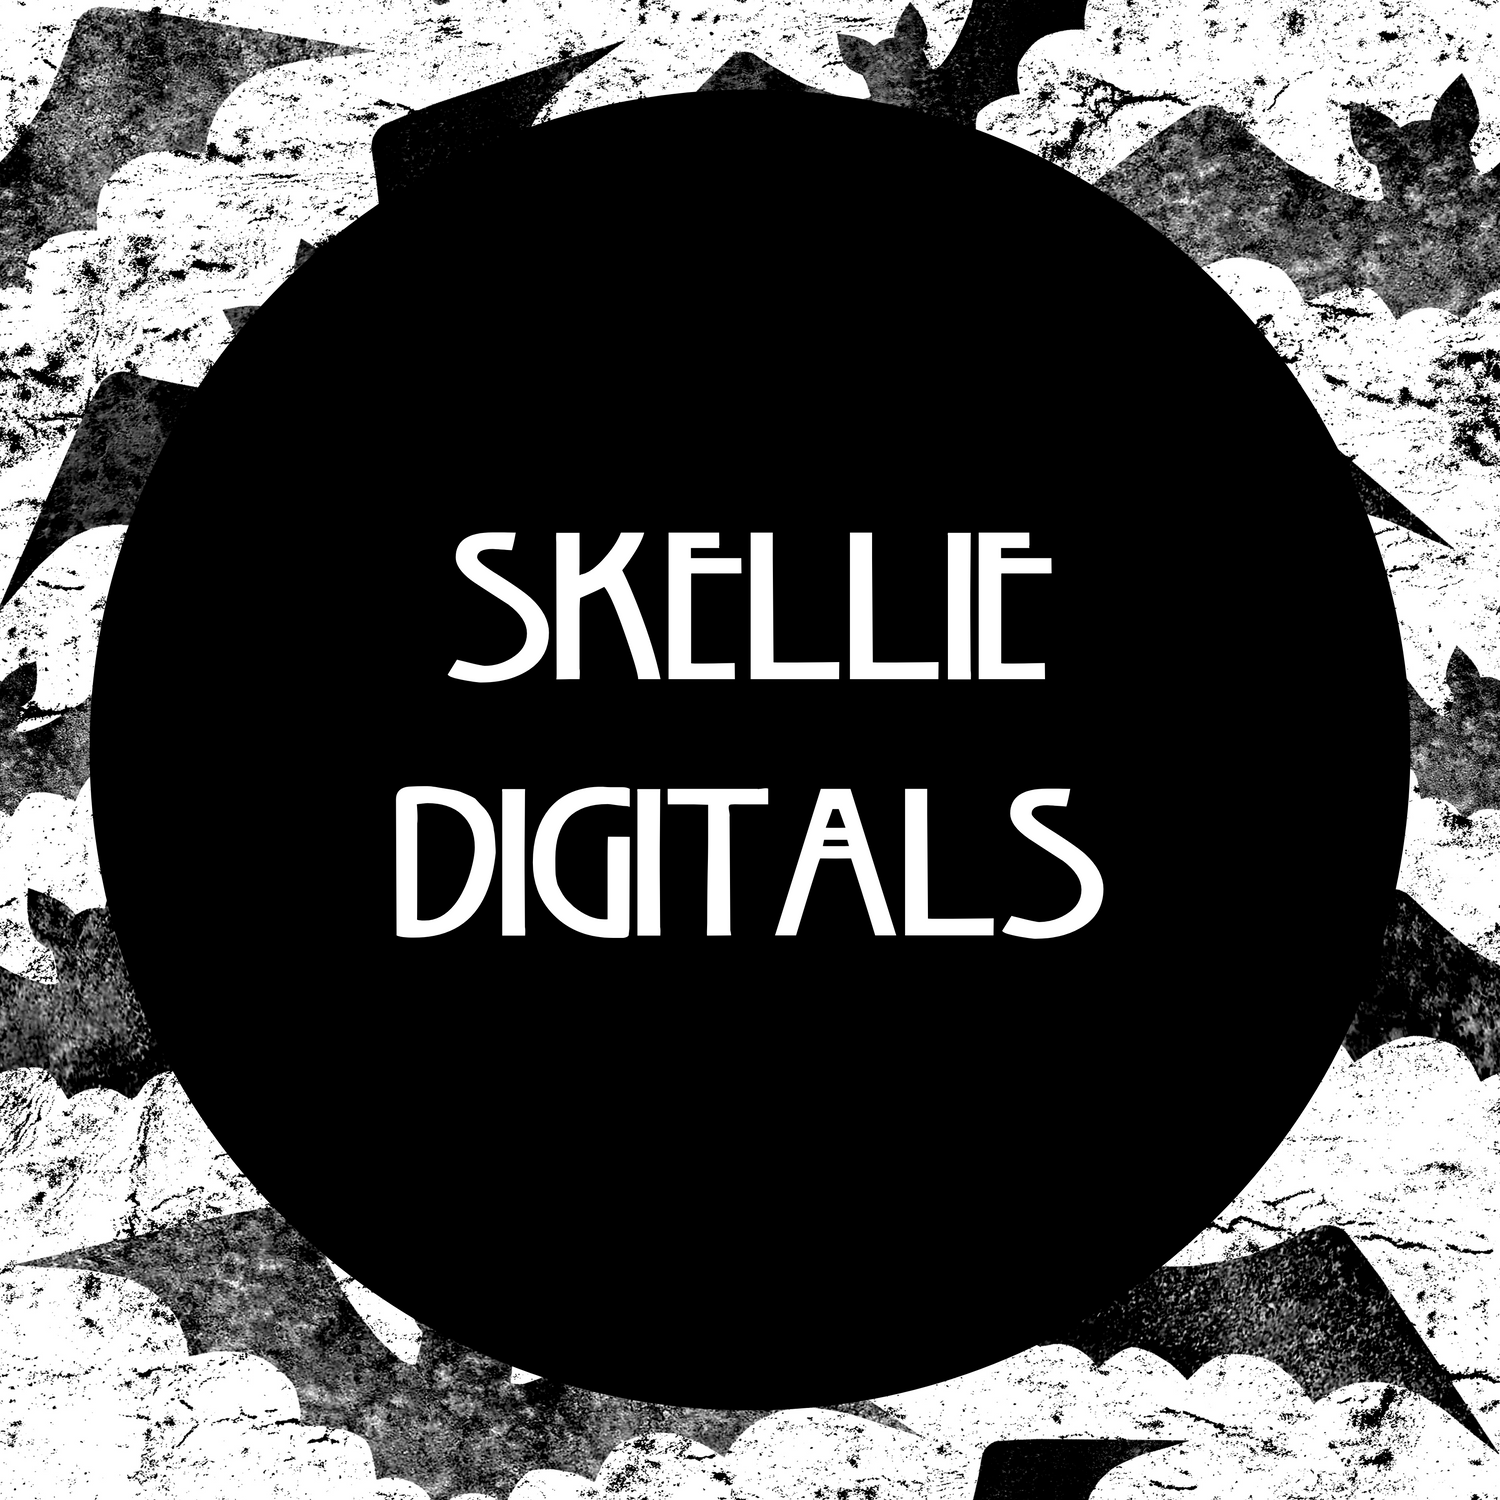 Skellie Digitals